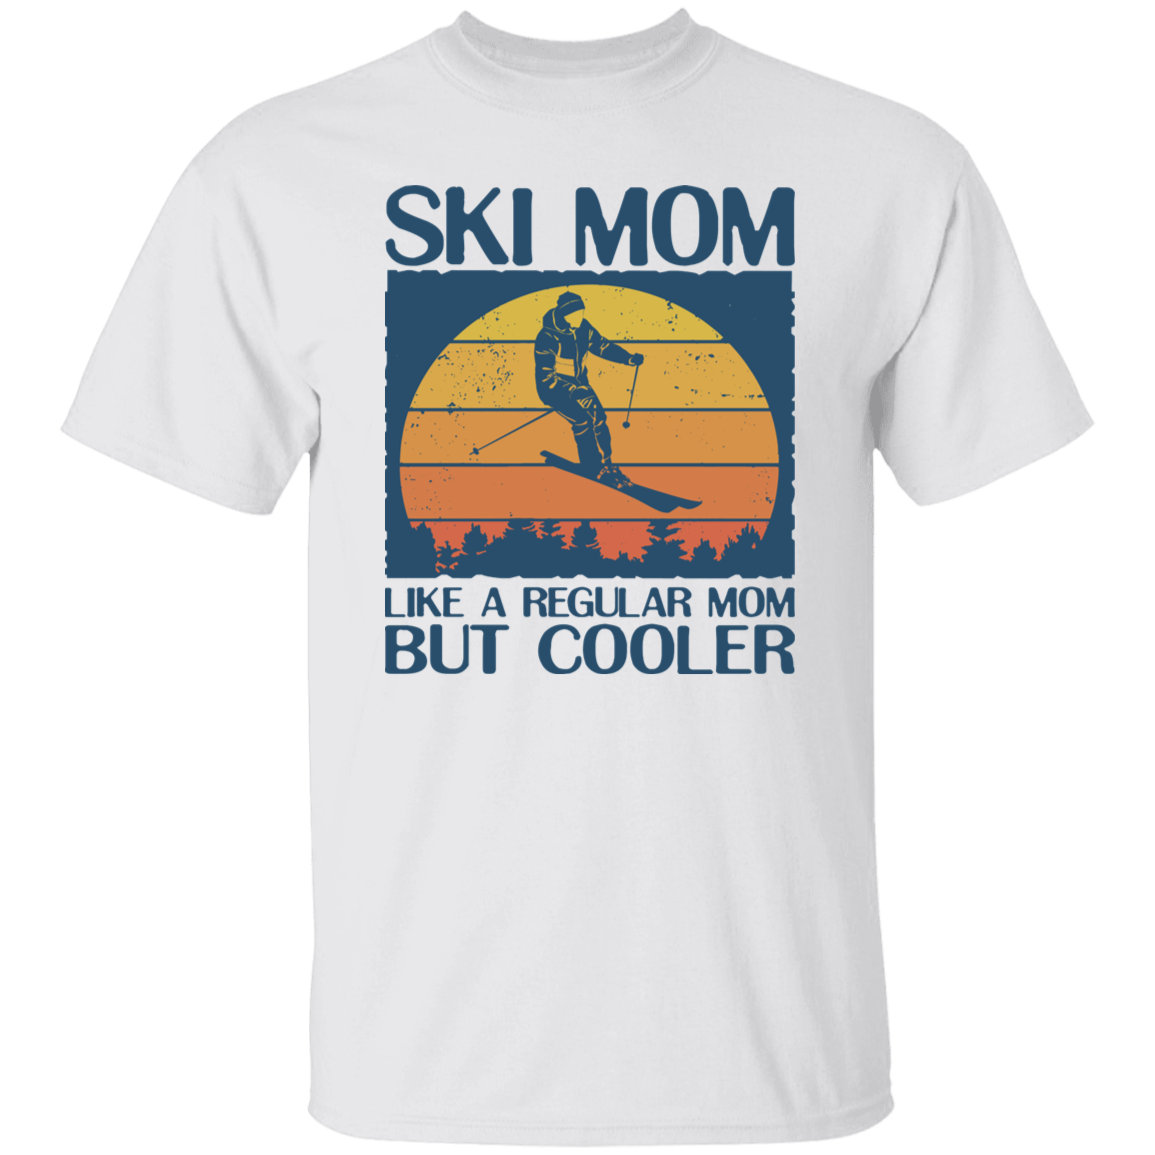 Ski Mom T-Shirt